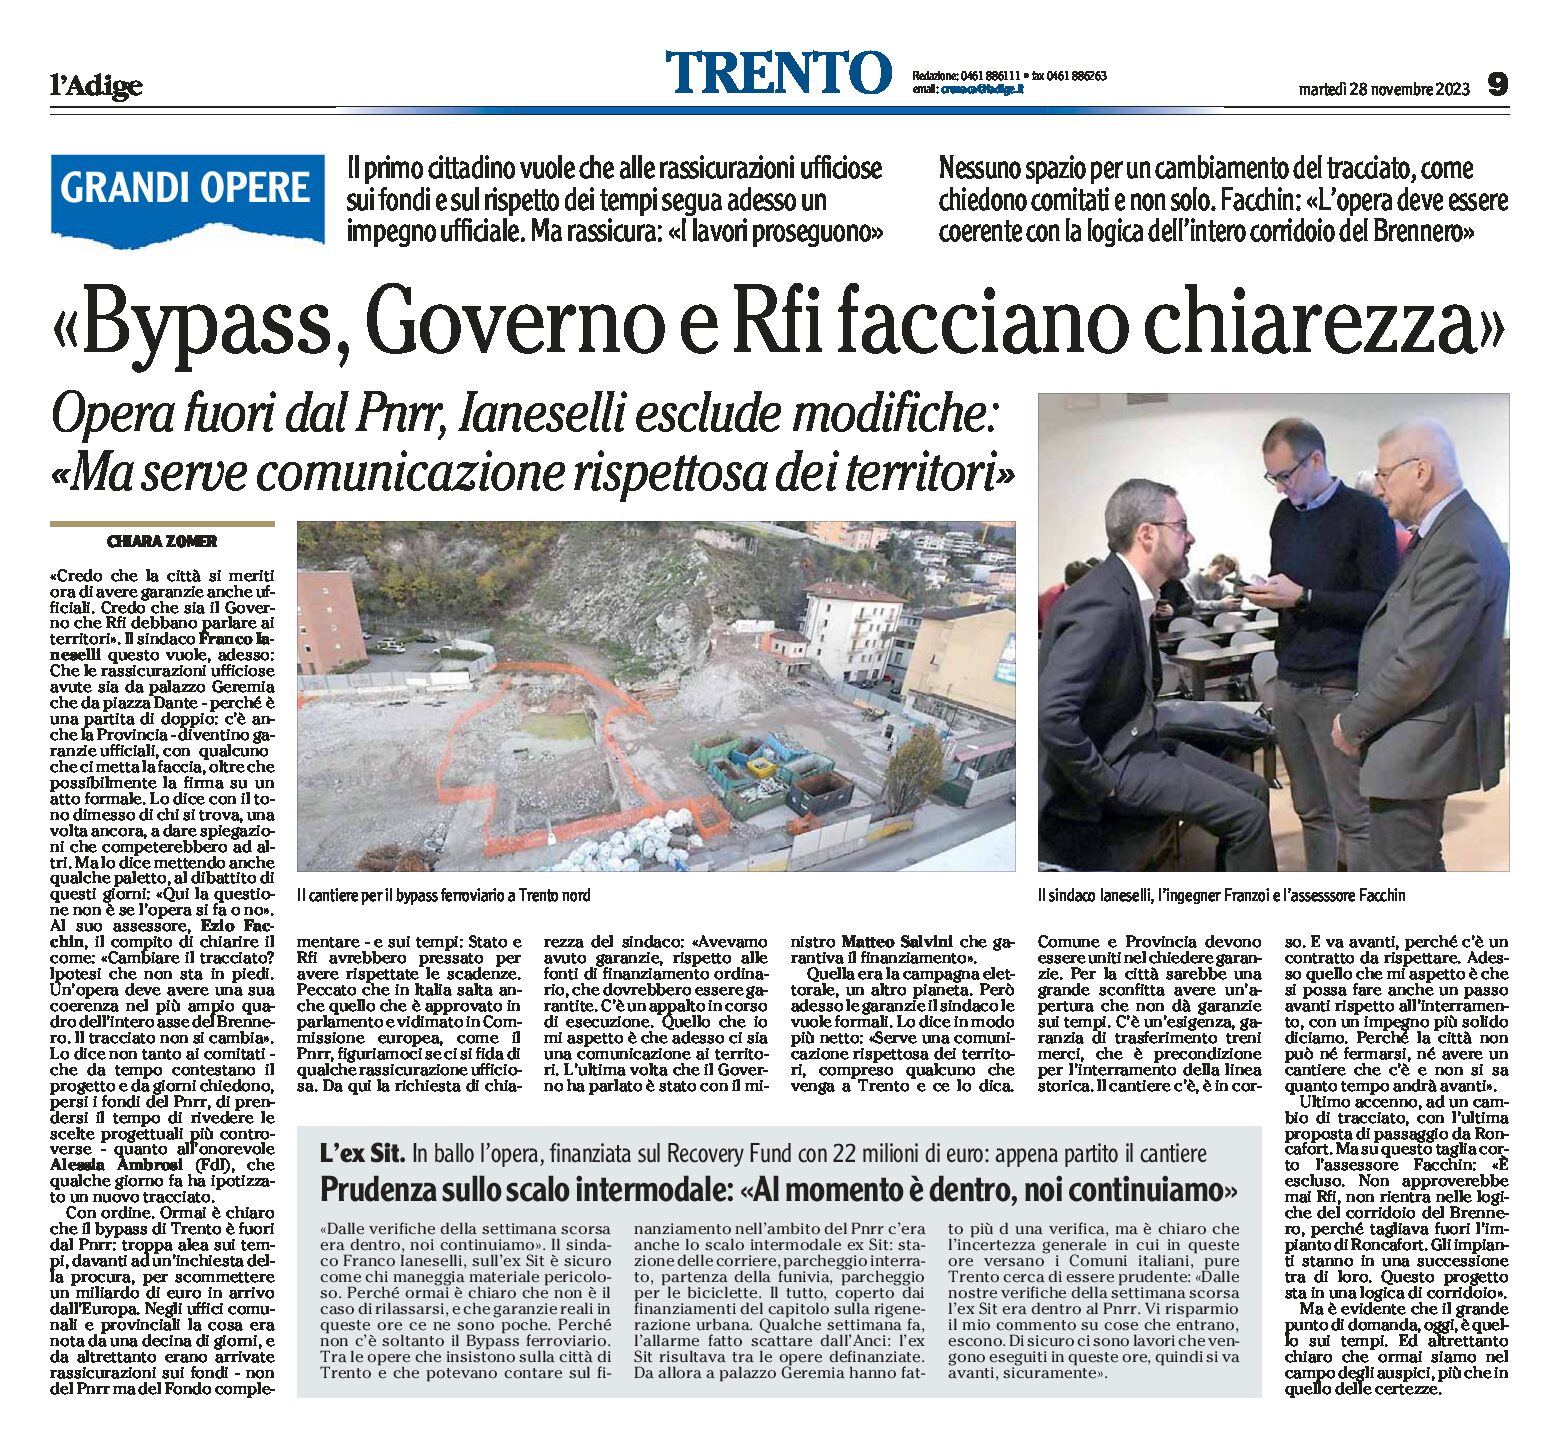 Trento, bypass: opera fuori dal Pnrr, Ianeselli “Governo e Rfi facciano chiarezza”